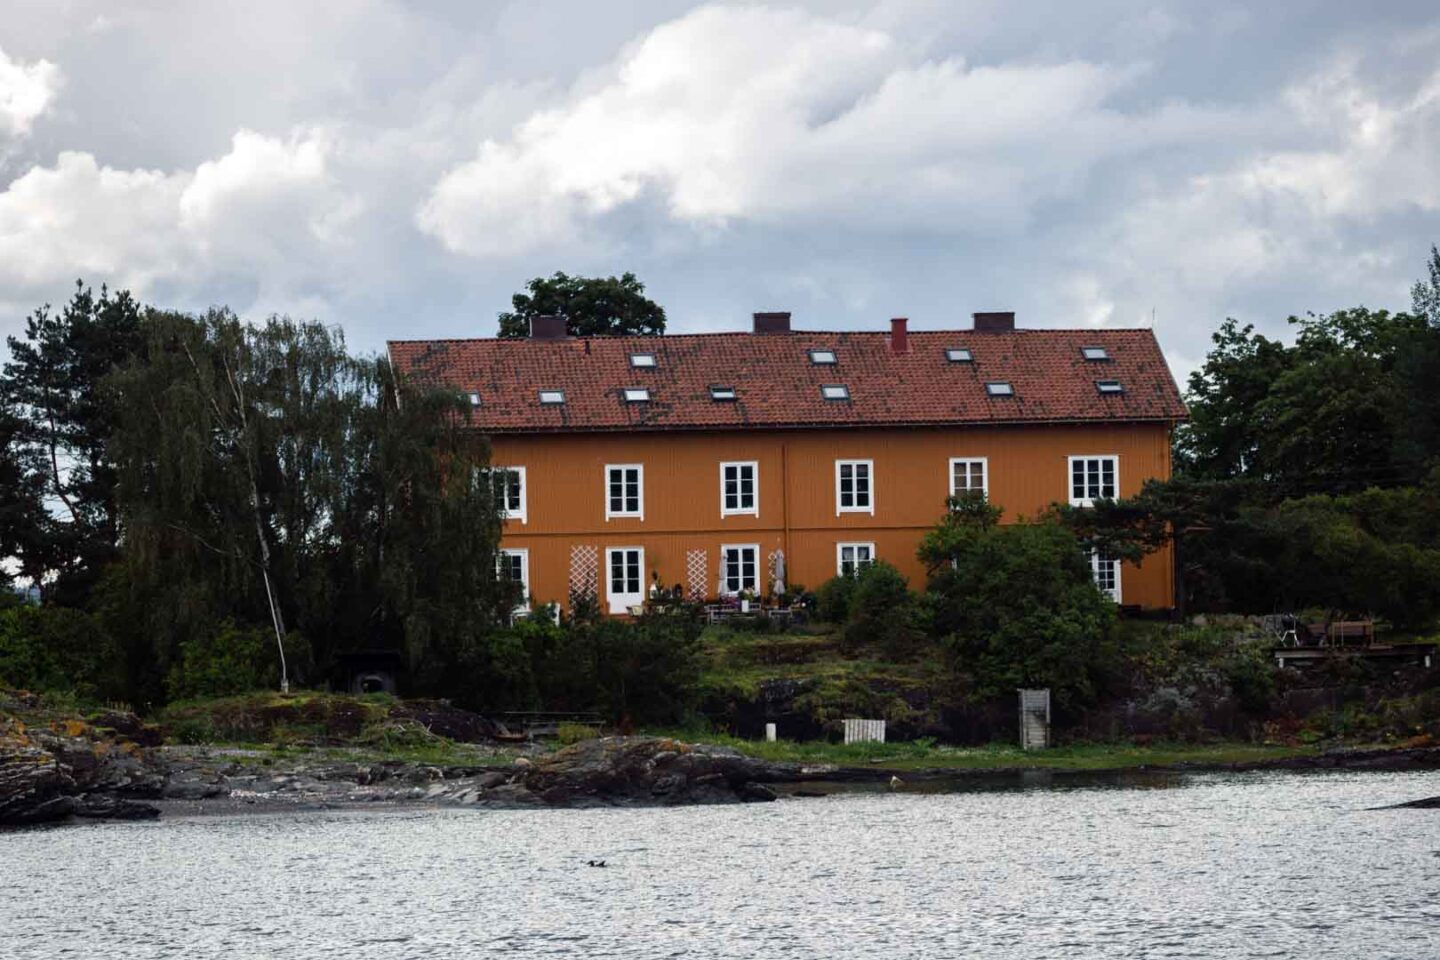 Oslo Fjord architecture